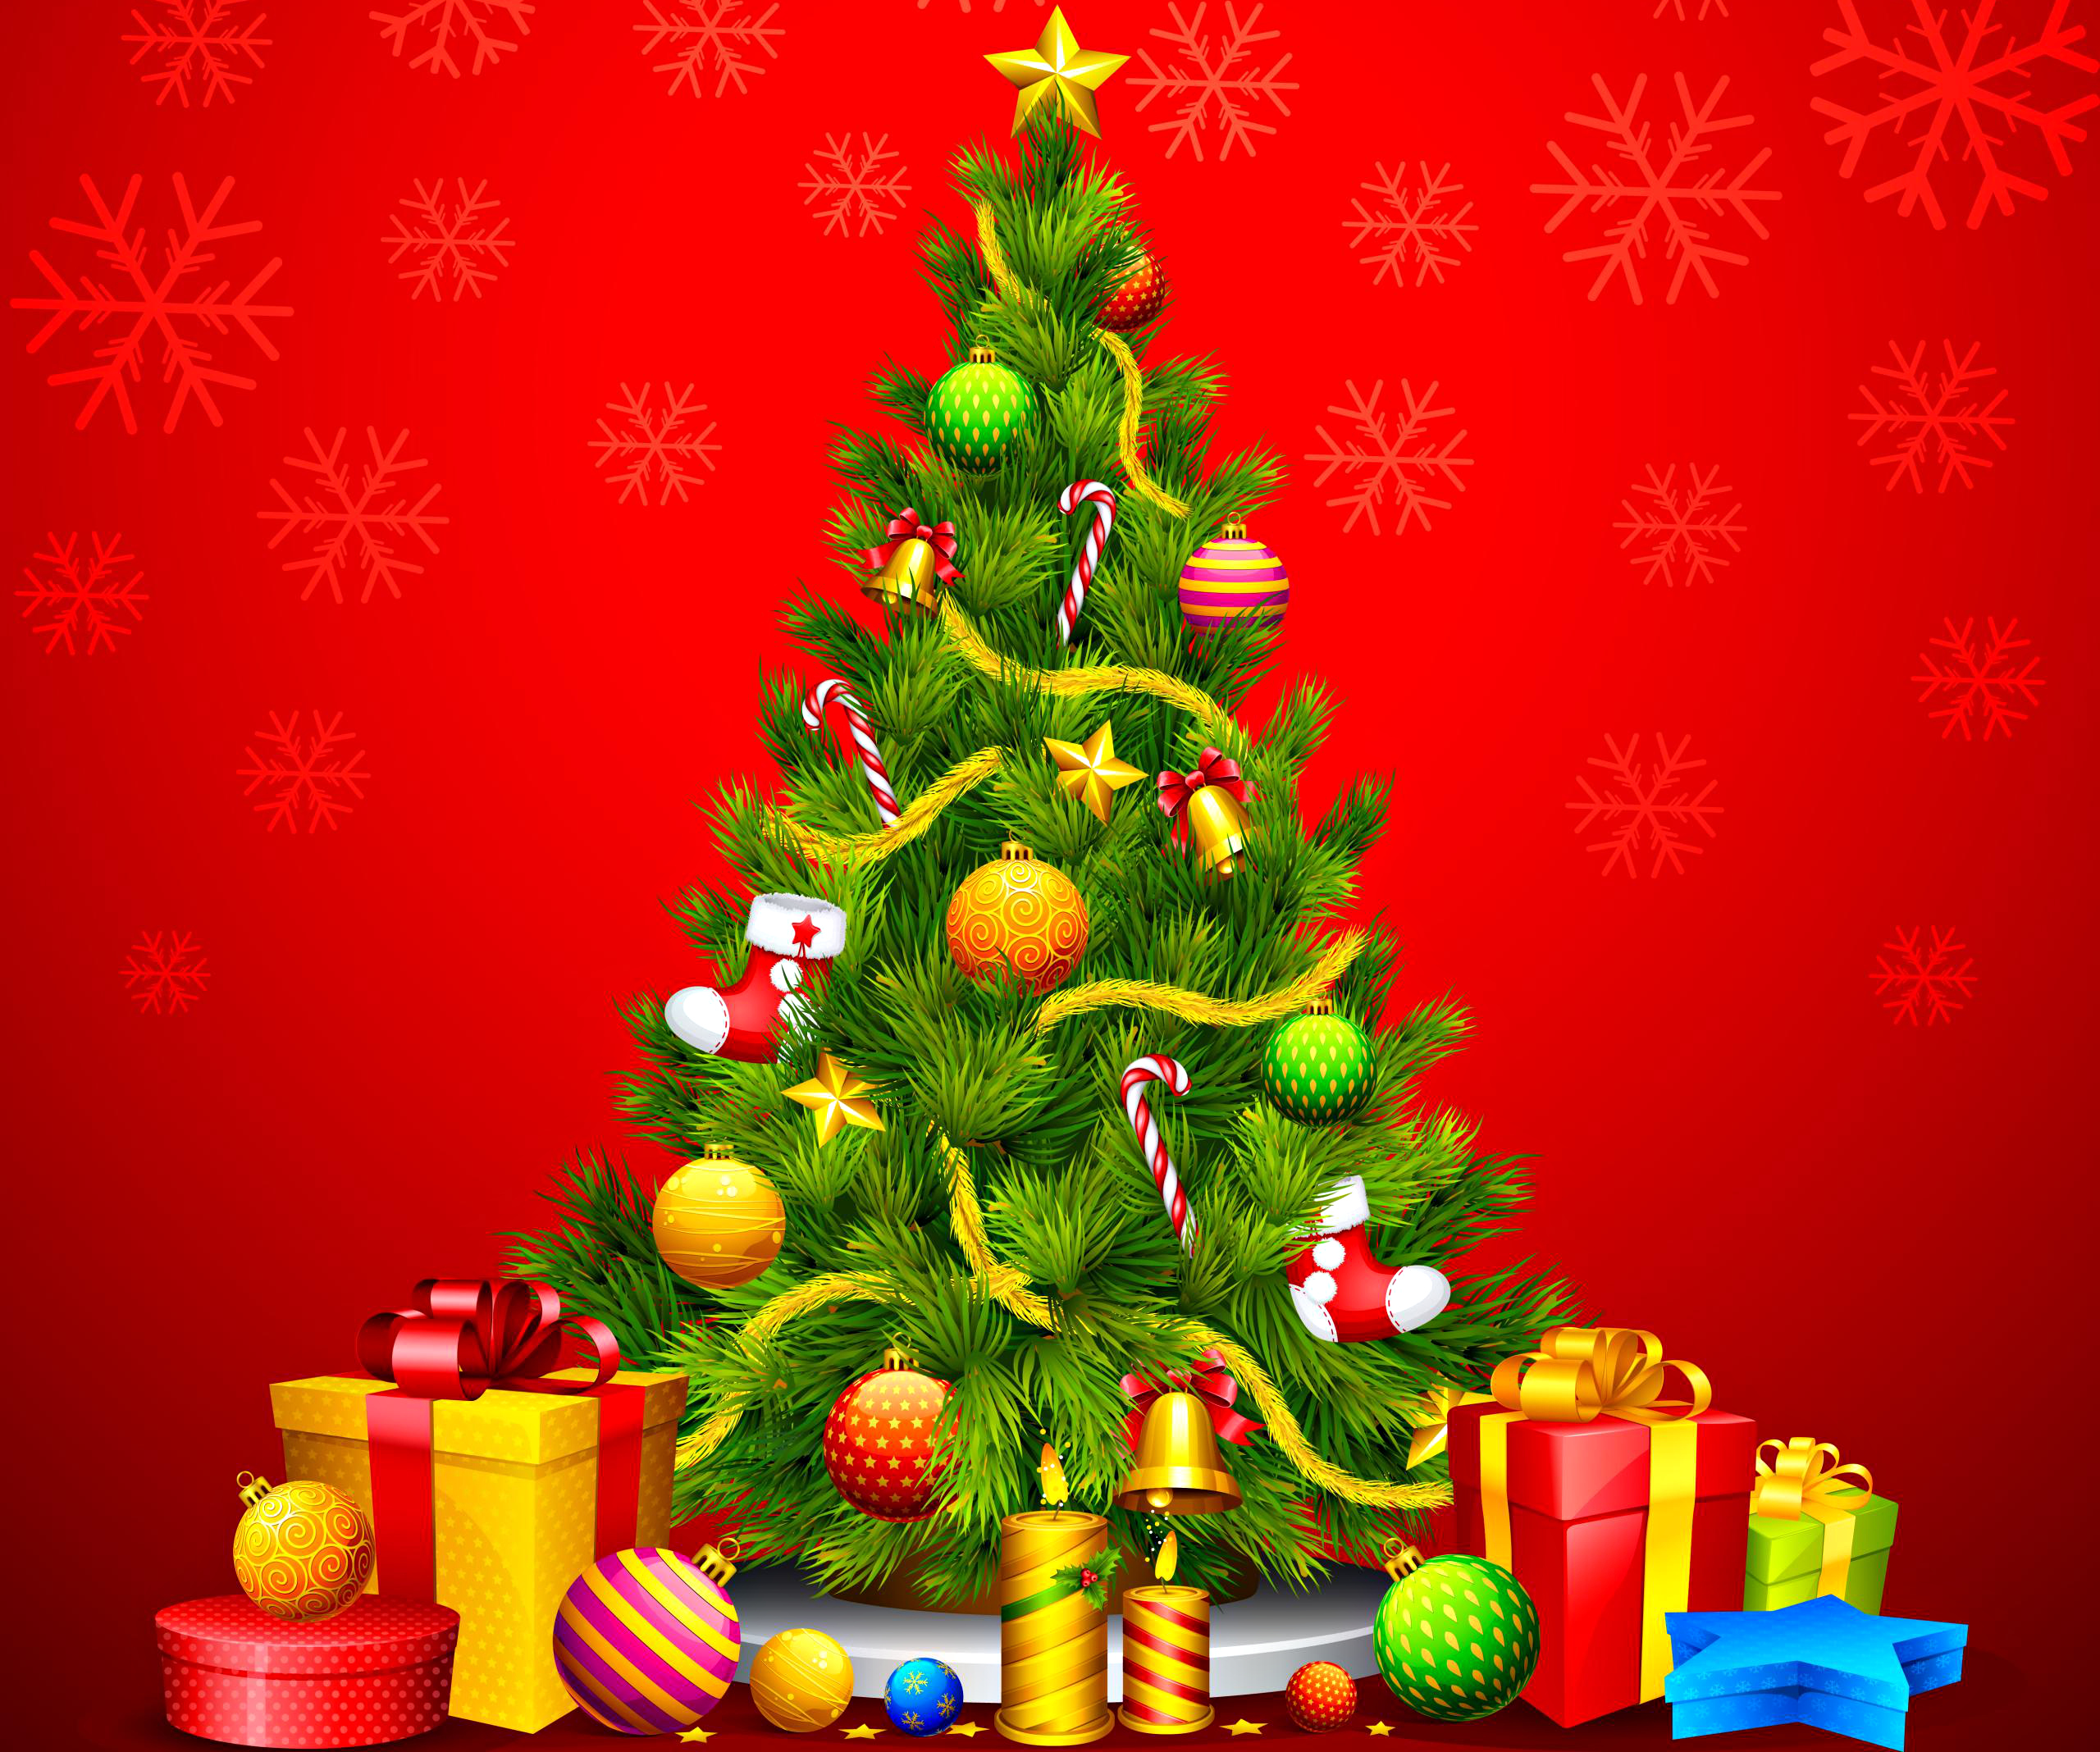 ツリーライブ壁紙,クリスマスツリー,クリスマスの飾り,クリスマスオーナメント,クリスマス,クリスマス・イブ